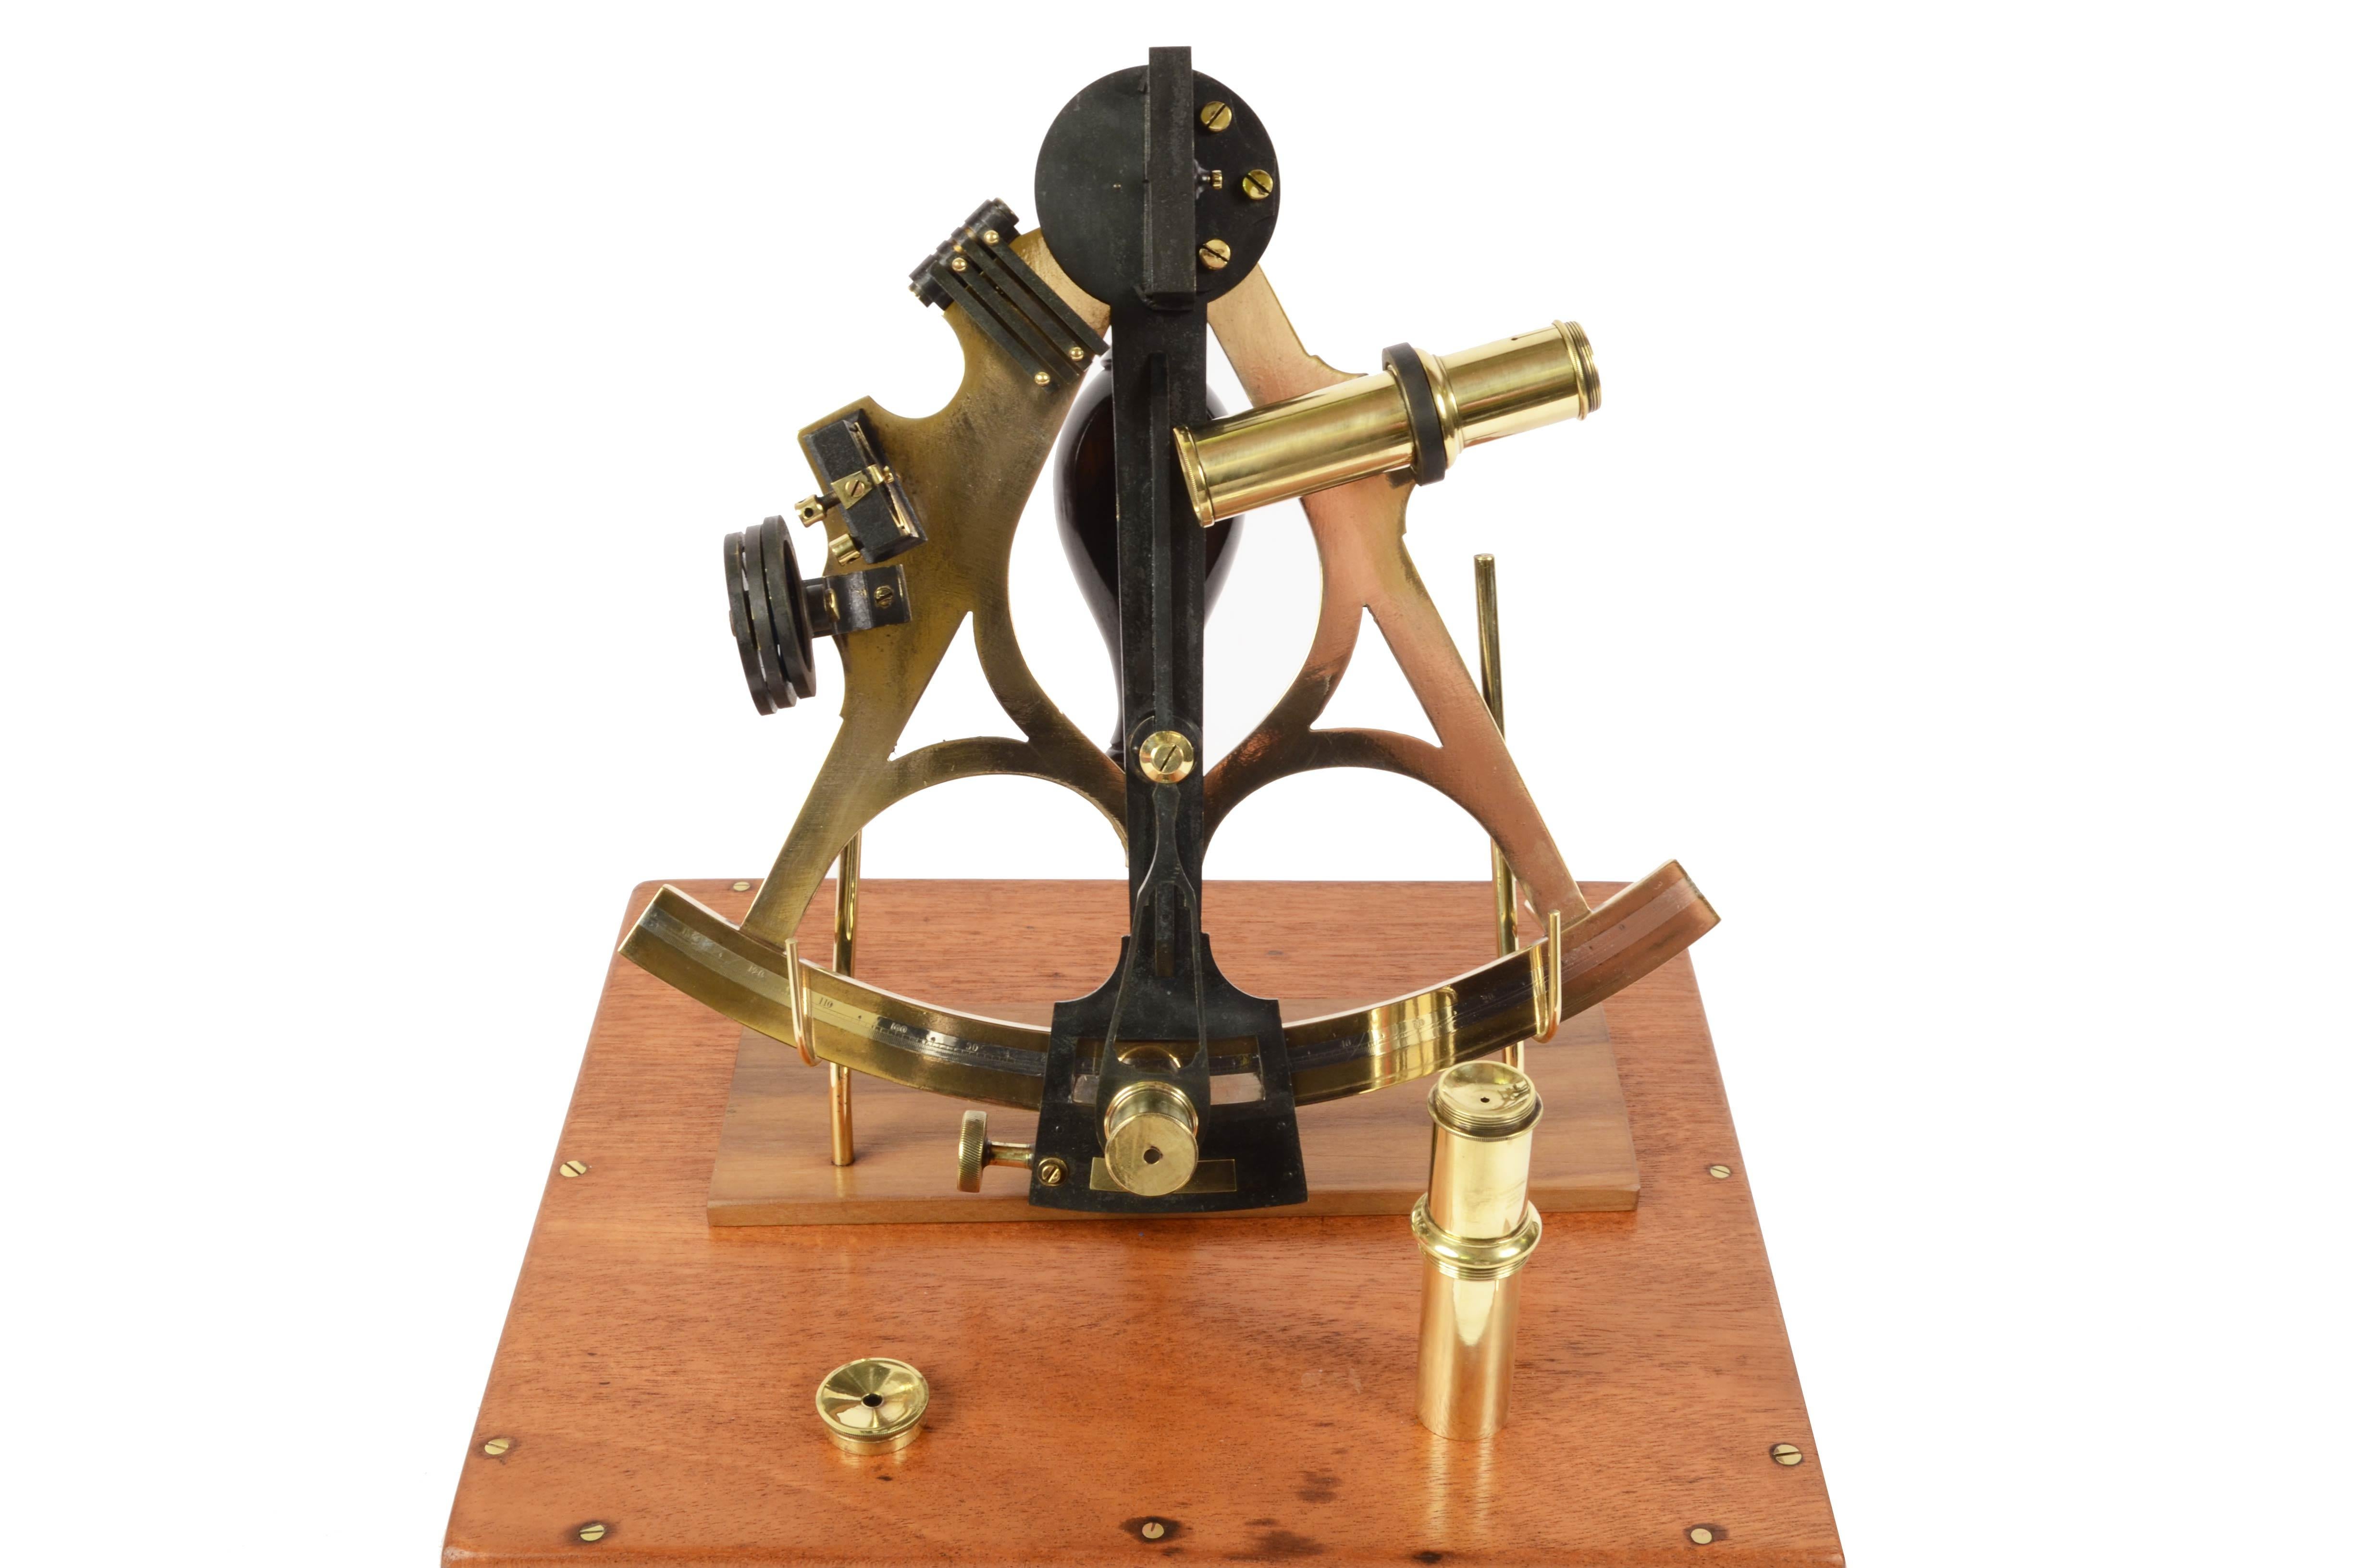 Sextant aus Messing, signiert Ainsley South Shields (1858-1886), komplett mit originalem Holzgehäuse und Linsen. 
Silberner Nonius, Holzgriff, 3 farbige Gläser für den festen Spiegel und 4 für den beweglichen, zwei Fernrohre, ein Mikroskop zum